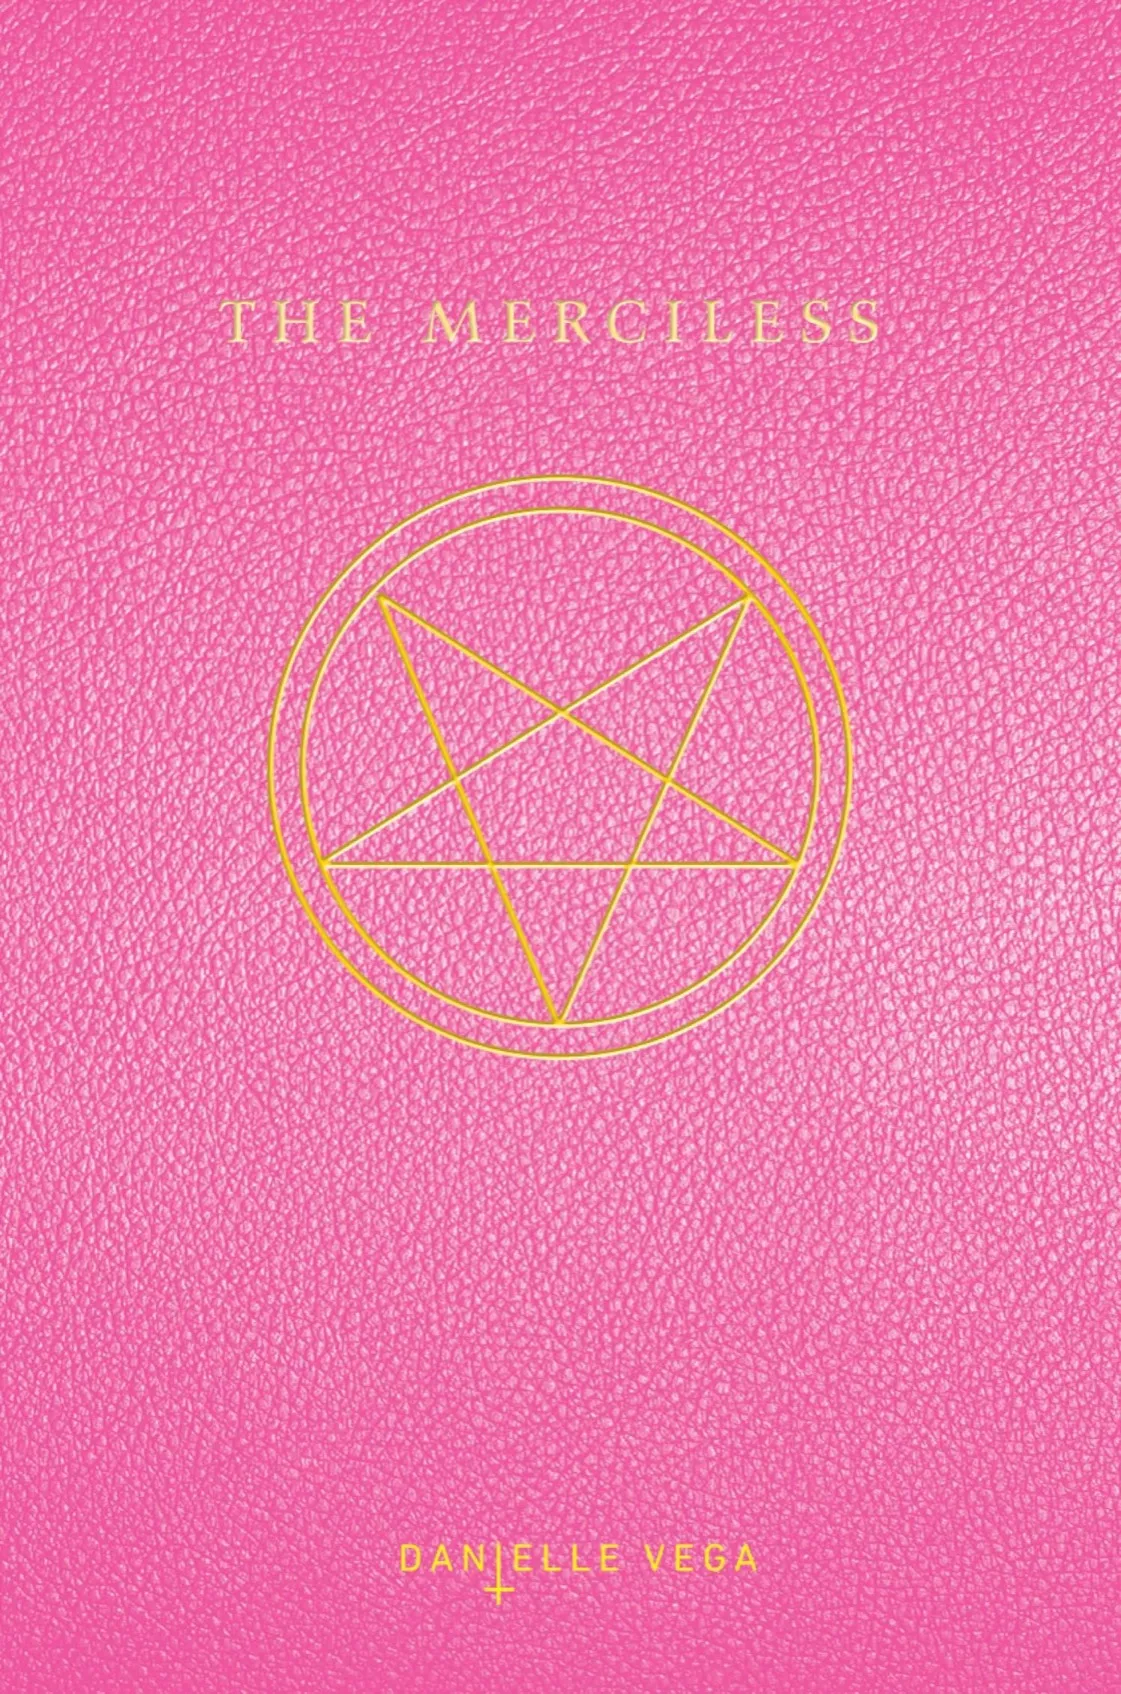 The Merciless (The Merciless #1)